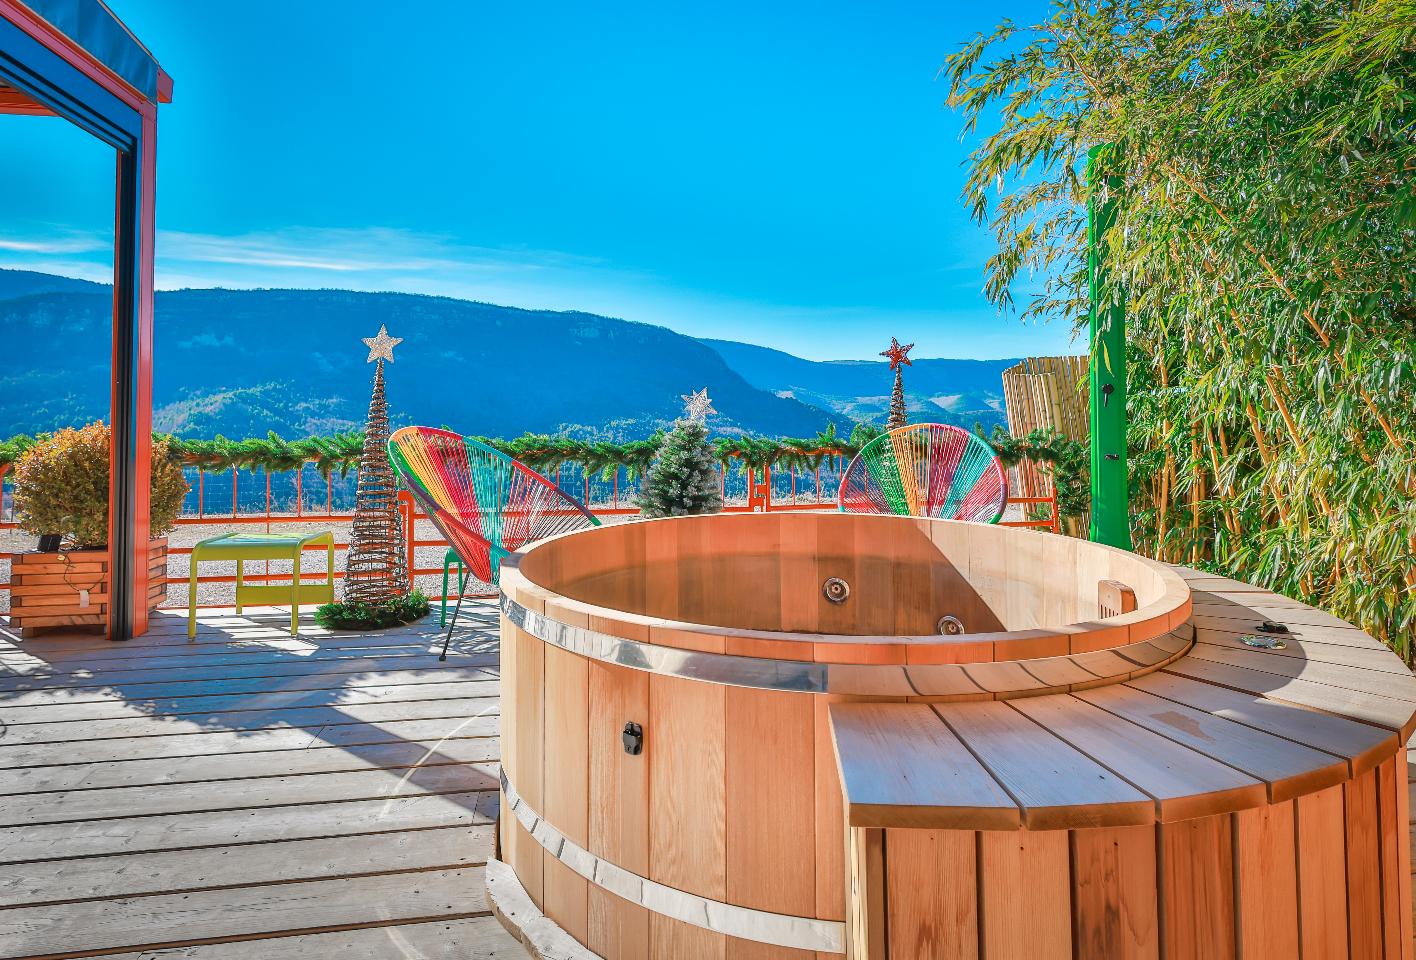 Hôte GreenGo: La Bella Vista - écogîte avec bain nordique chauffé à remous - Image 29